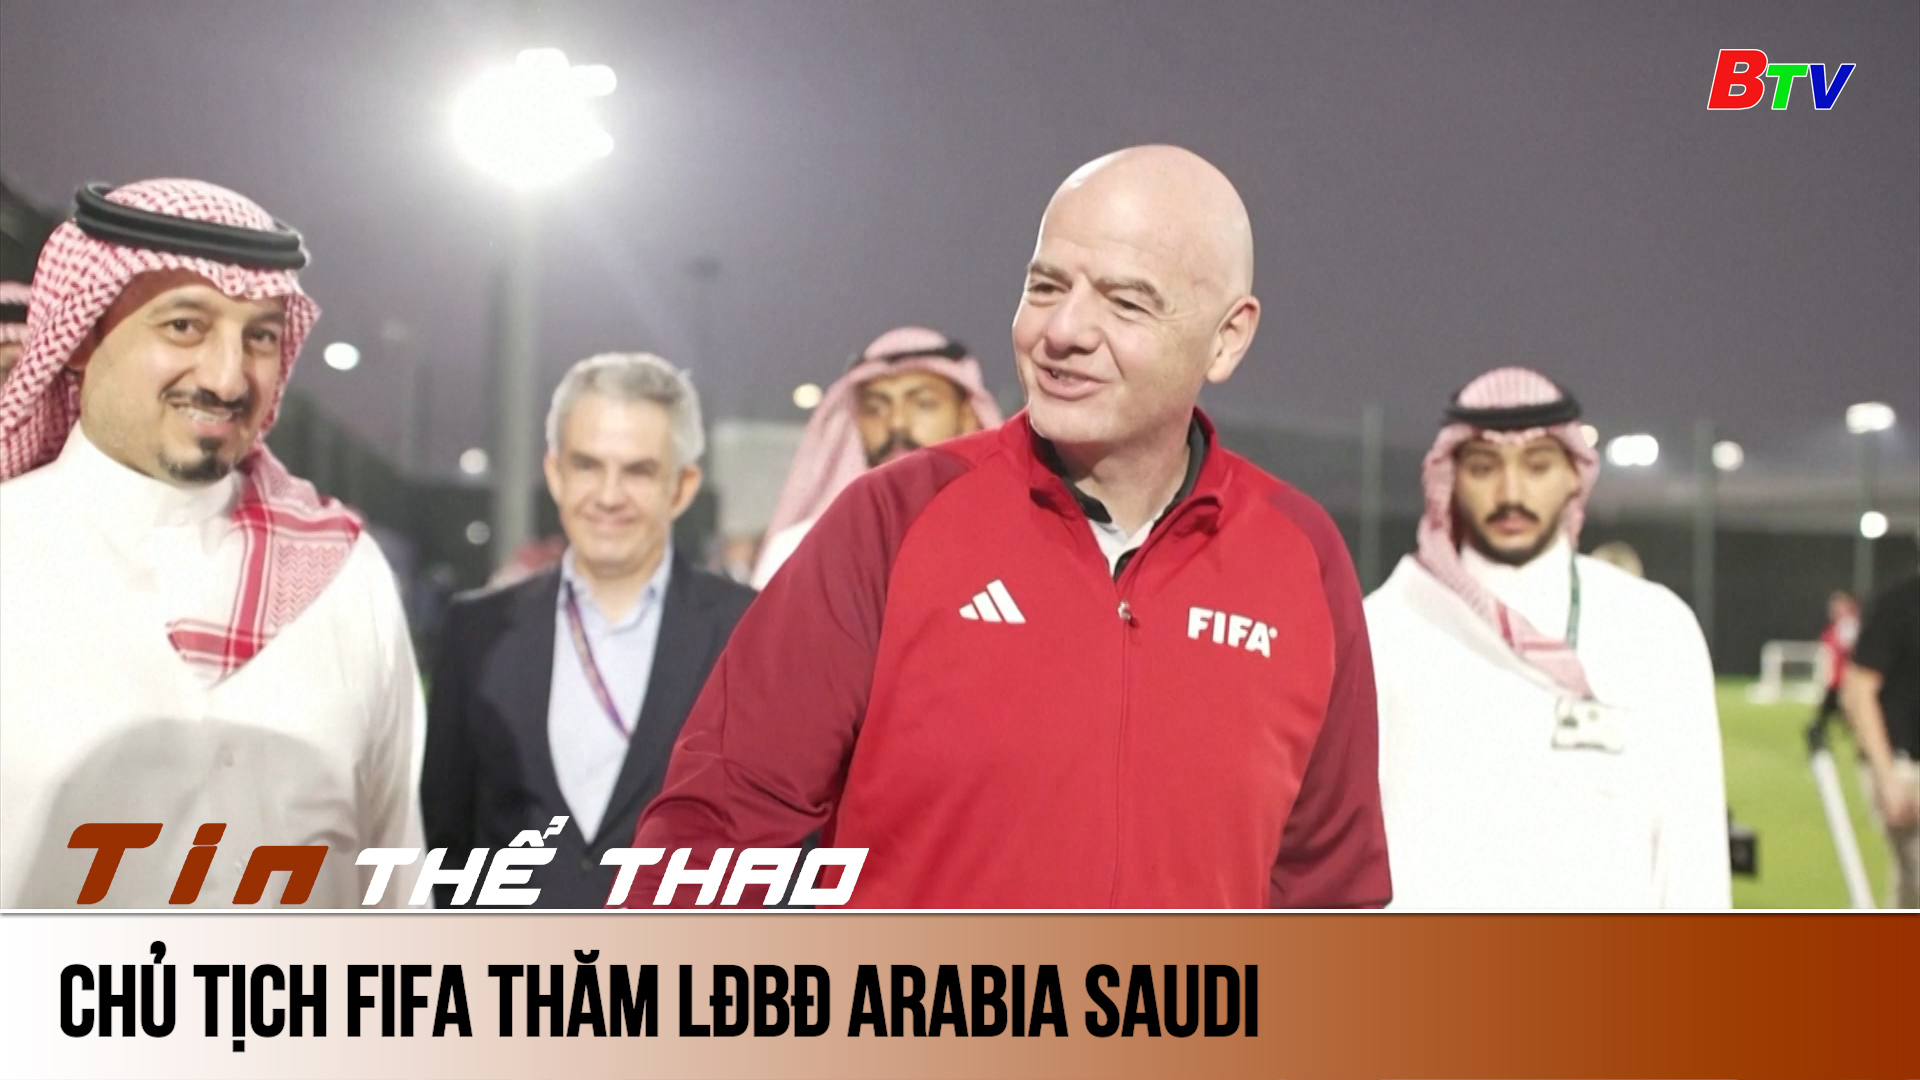 Chủ tịch FIFA và các huyền thoại bóng đá thăm LĐBĐ Arabia Saudi | Tin Thể thao 24h